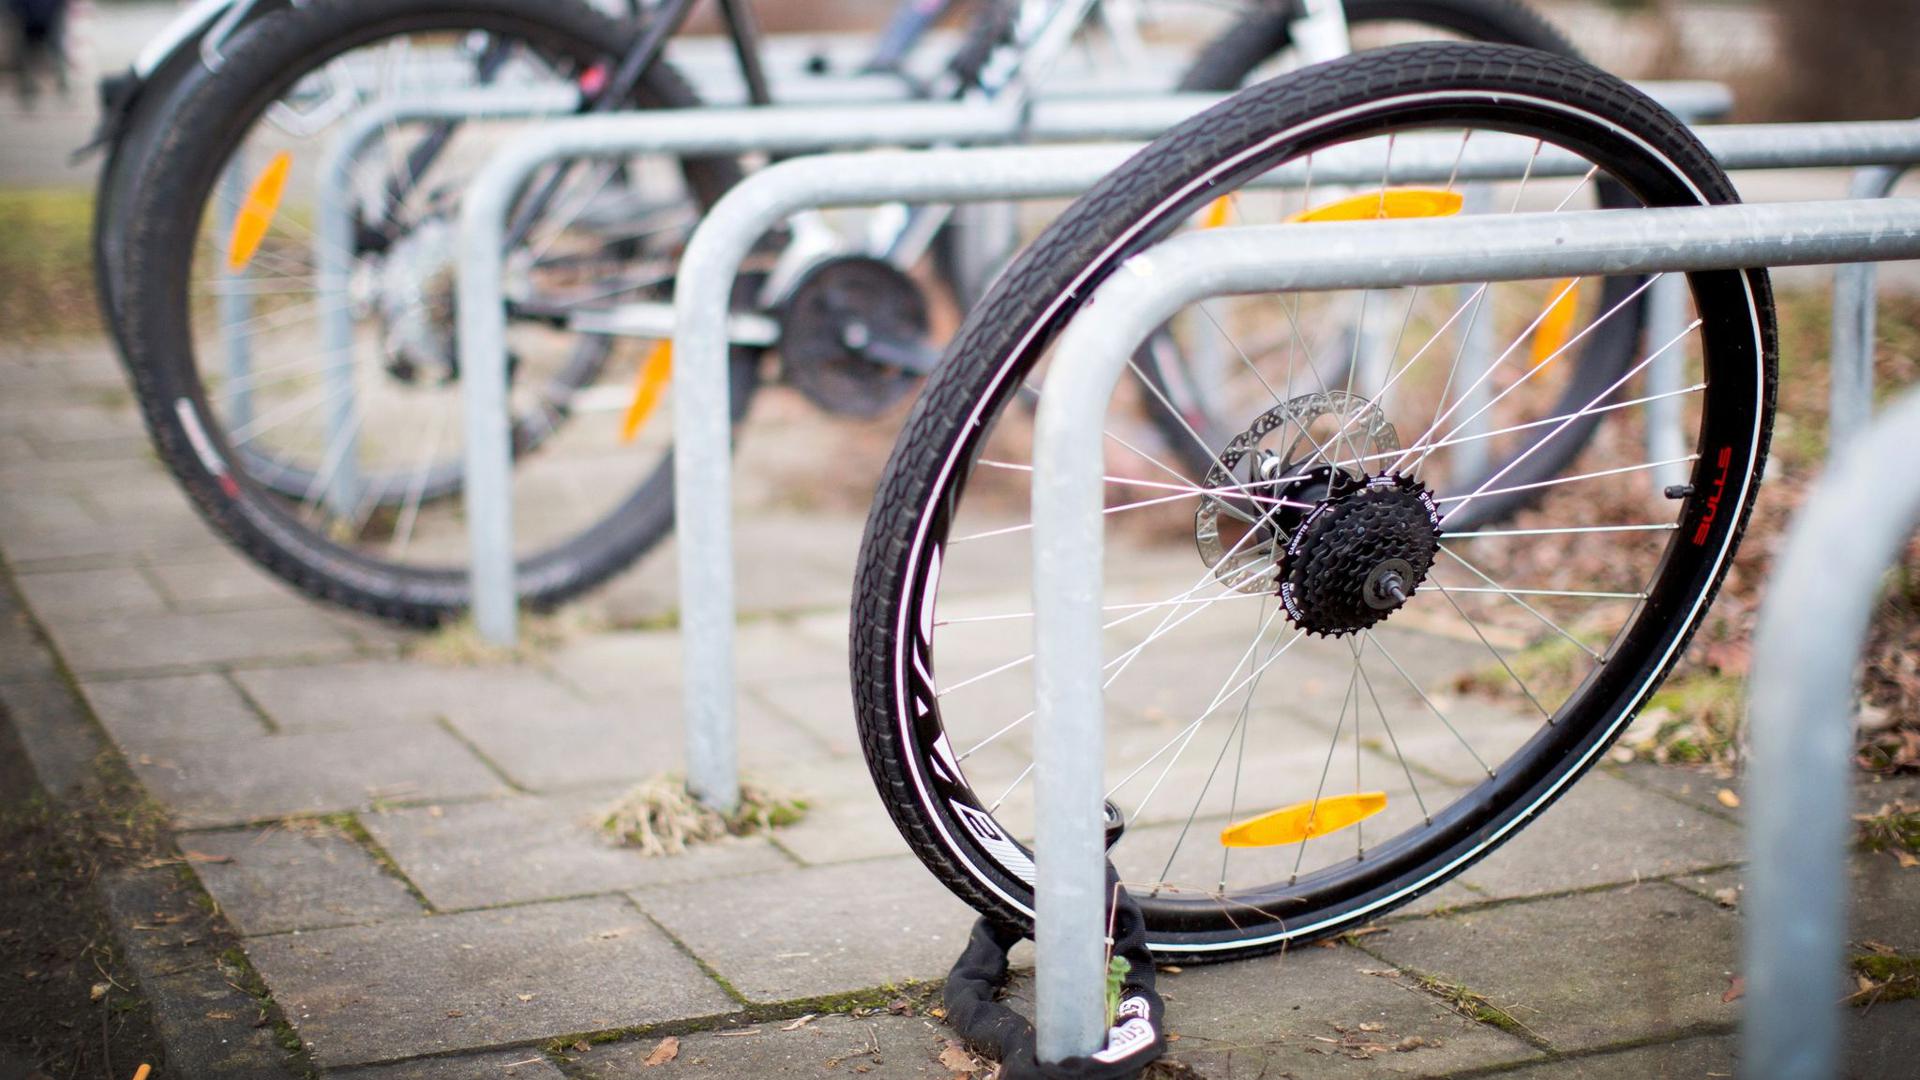 Der Polizeilichen Kriminalstatistik zufolge wurden im vergangenen Jahr bundesweit 271.500 Fahrräder gestohlen, die Aufklärungsquote lag bei 9,2 Prozent.